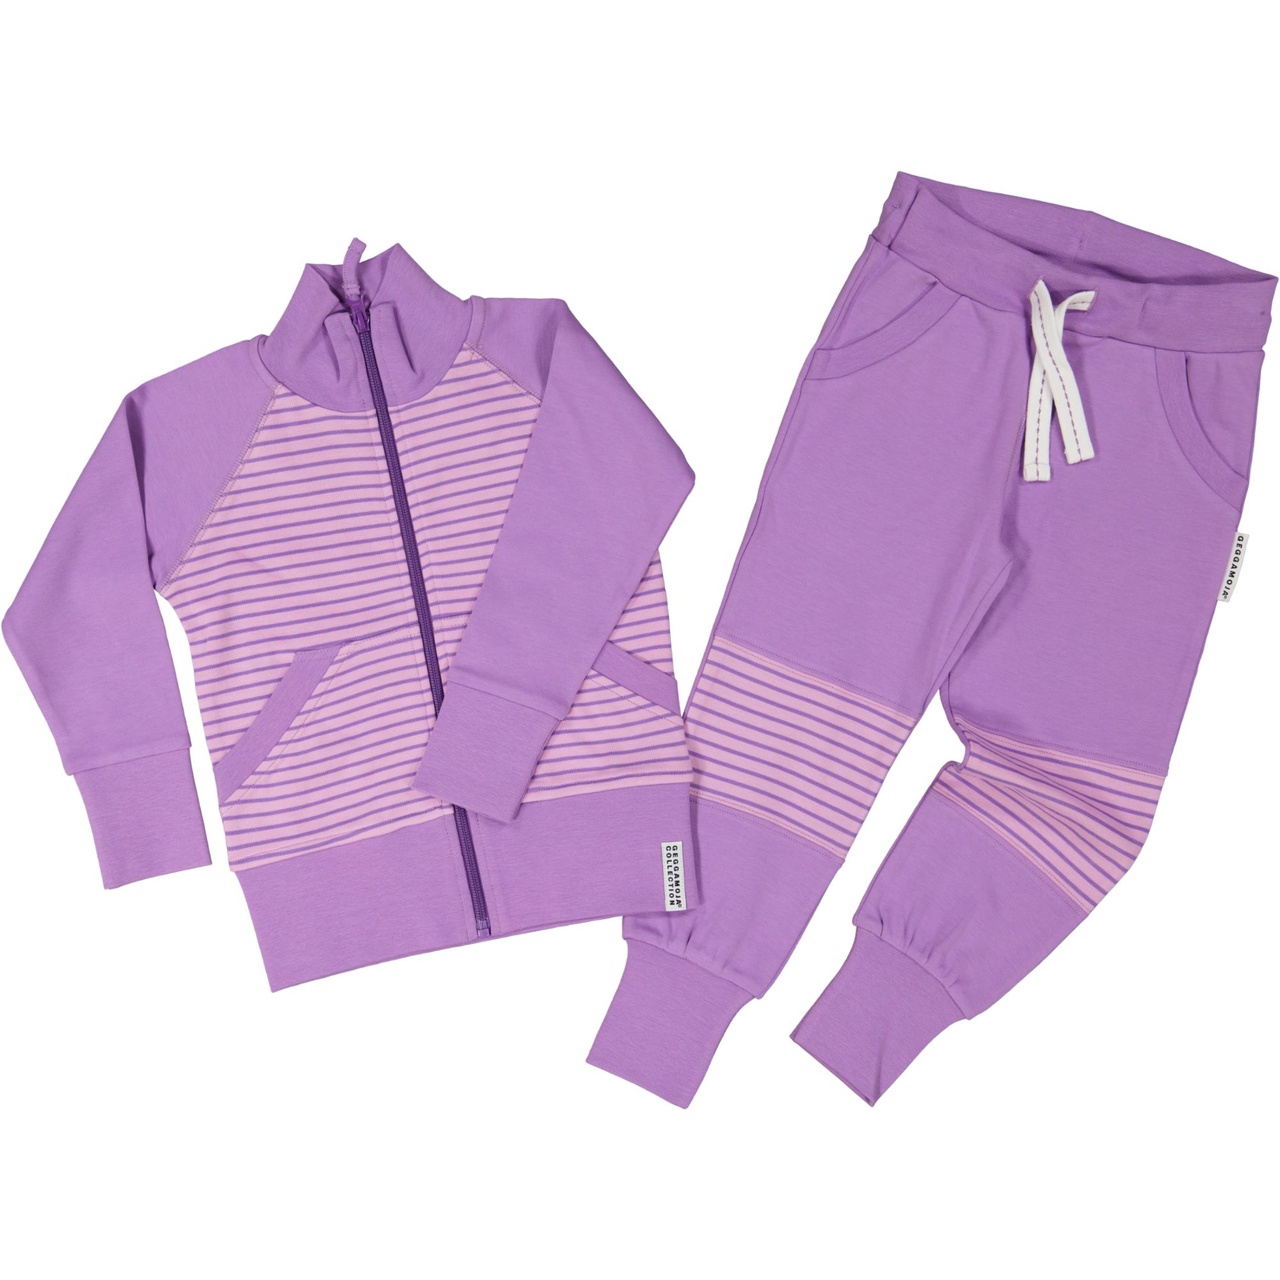 Zip sweater L.purple/purple  86/92